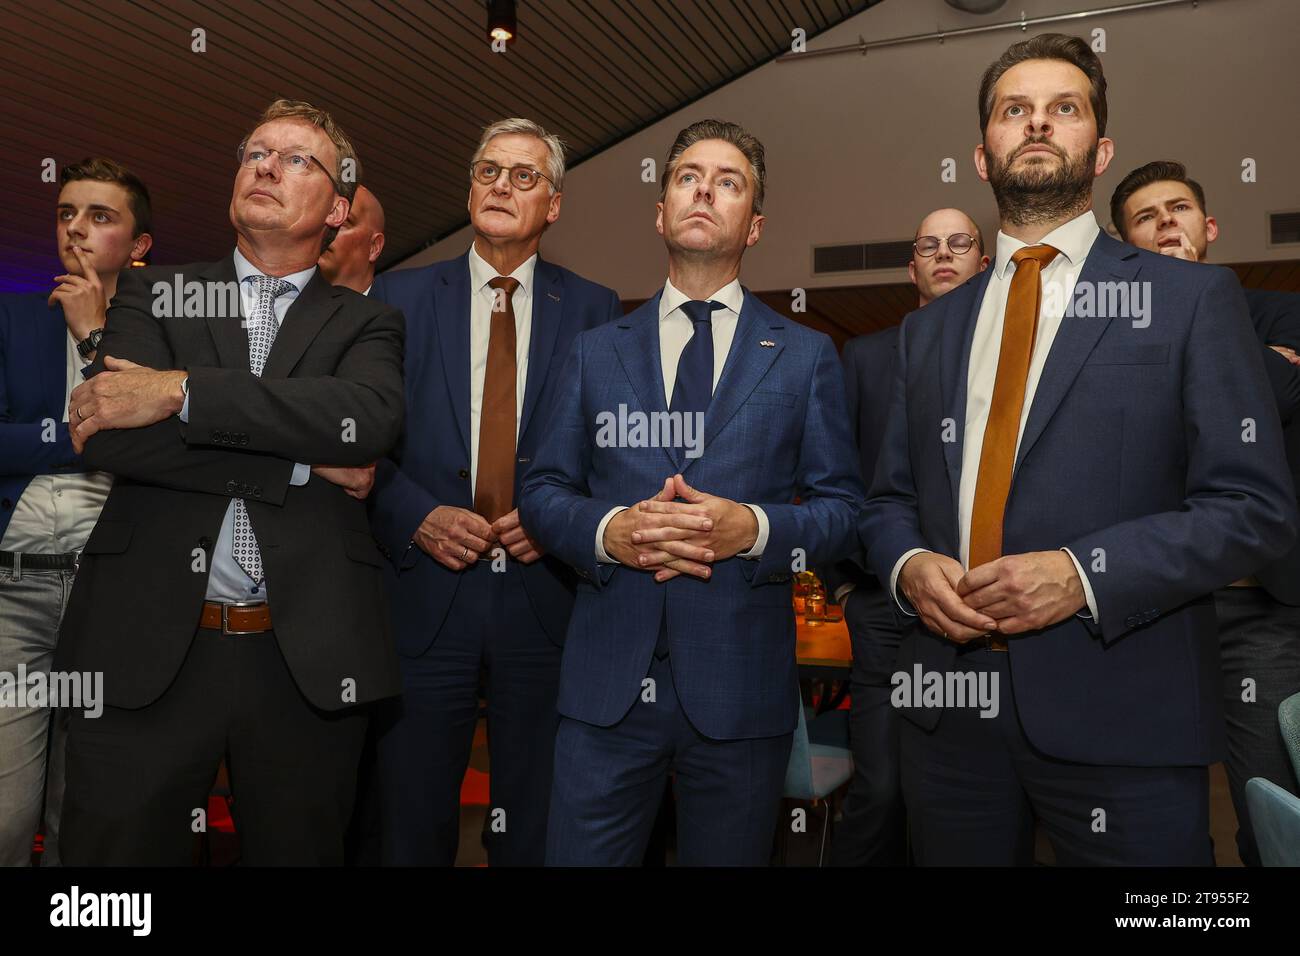 KAMERIK - les membres du Parti Diederik van Dijk, le sénateur Peter Schalk, Chris Stoffer, Andre Flach (lr) du SGP suivent les résultats des élections à la Chambre des représentants. ANP VINCENT JANNINK netherlands Out - belgique Out Banque D'Images